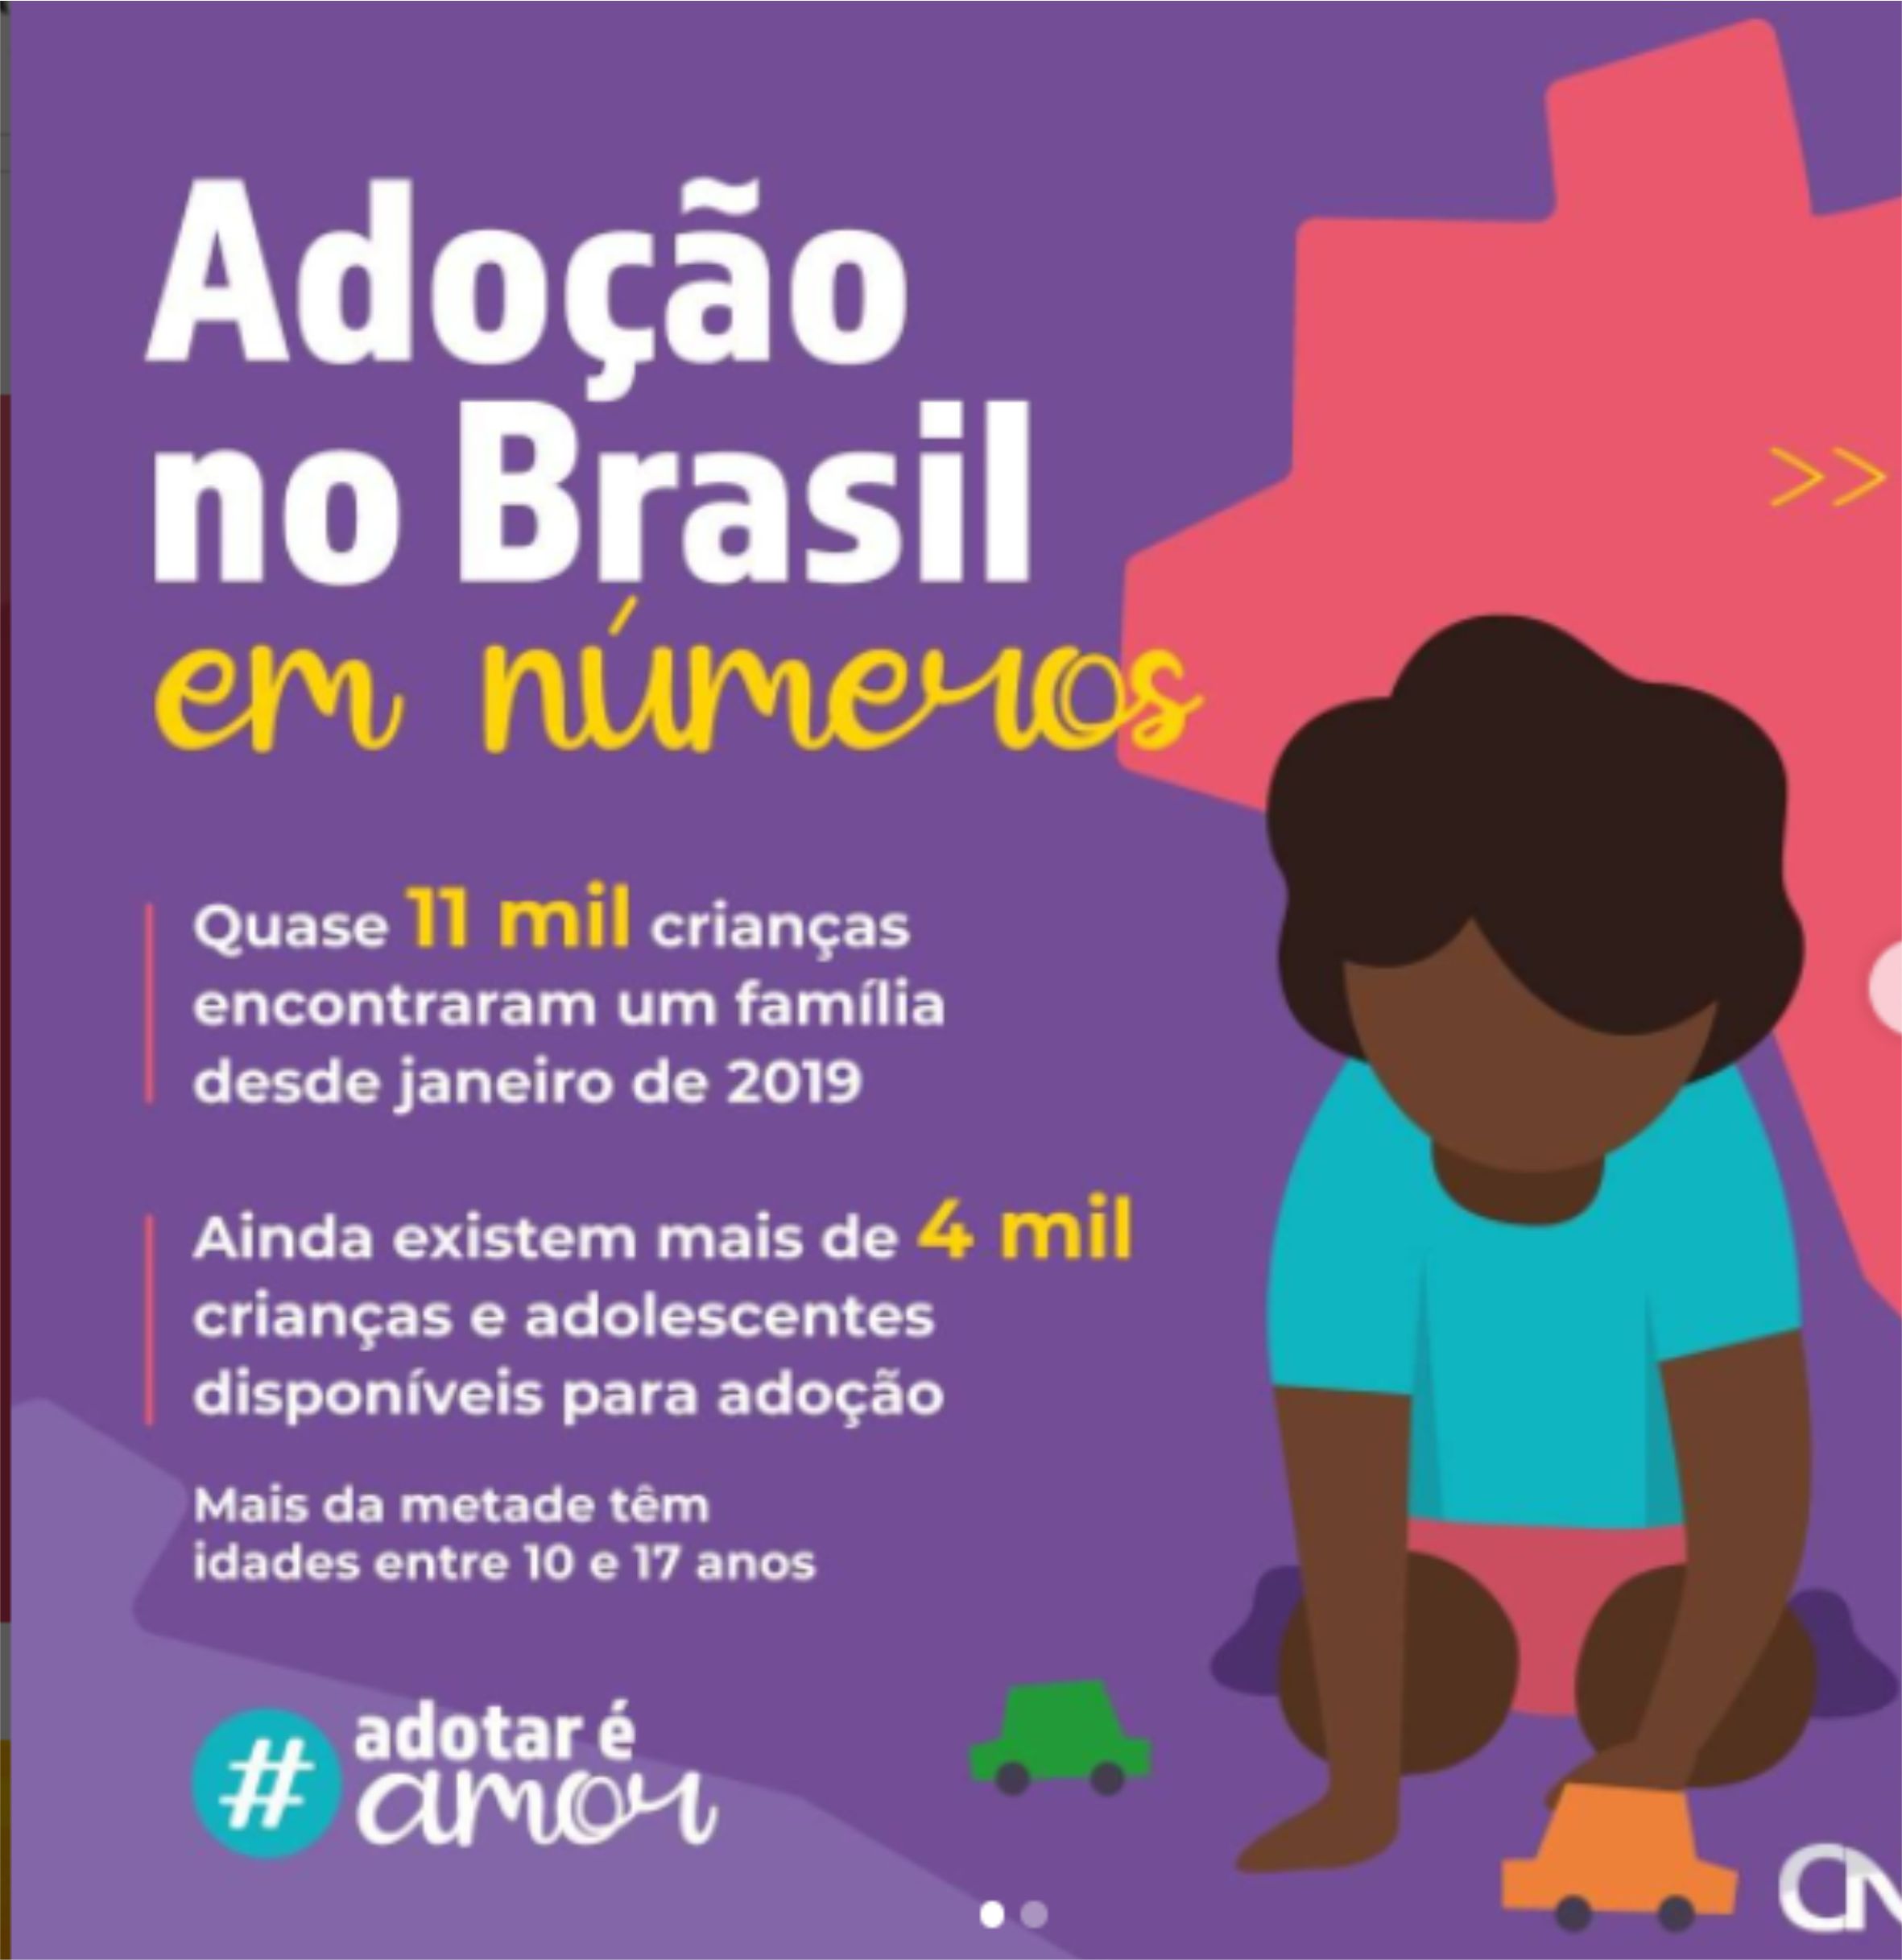 Adoção no Brasil em números